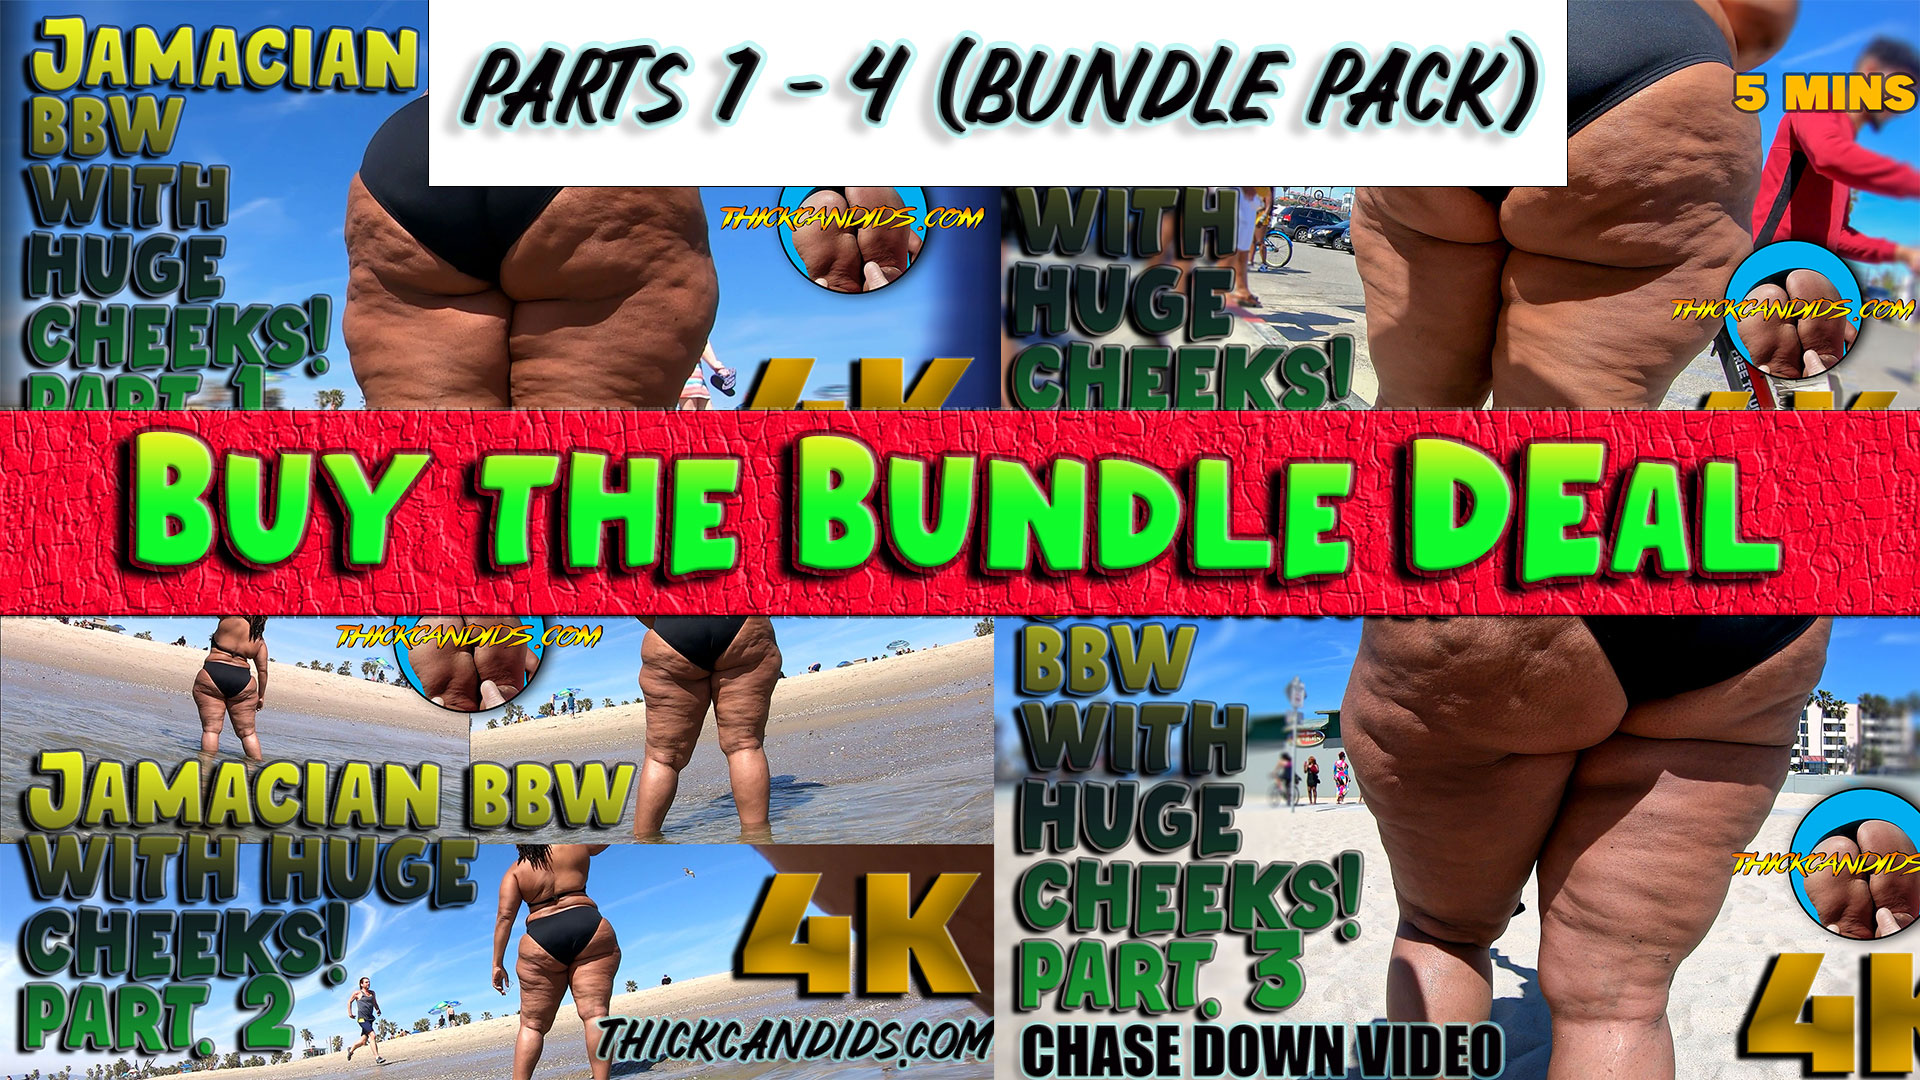 Jamaican-BBW-with-Huge-Cheeks!-Bundle-Deal-1-4